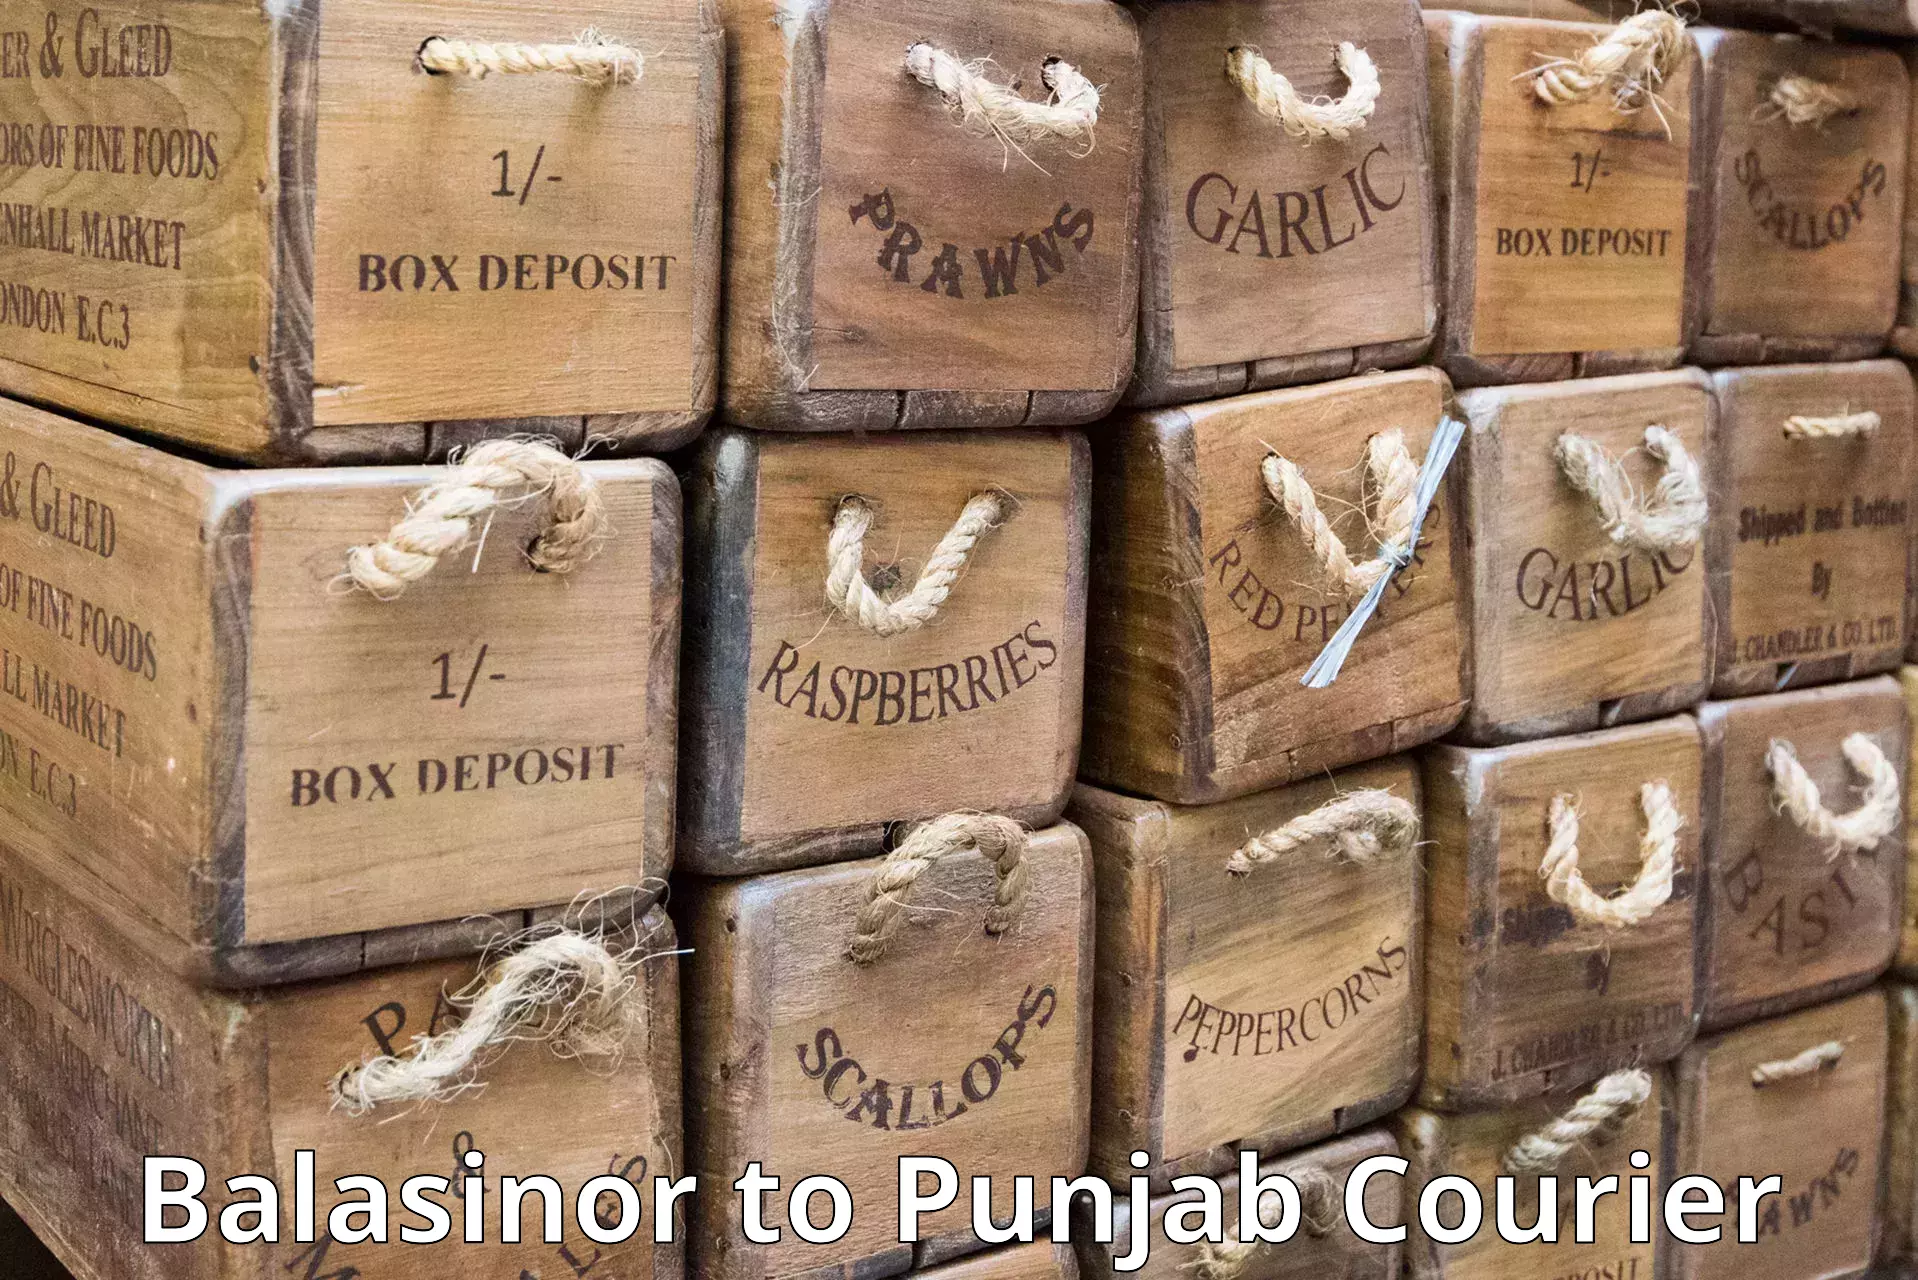 Customized shipping options Balasinor to Central University of Punjab Bathinda